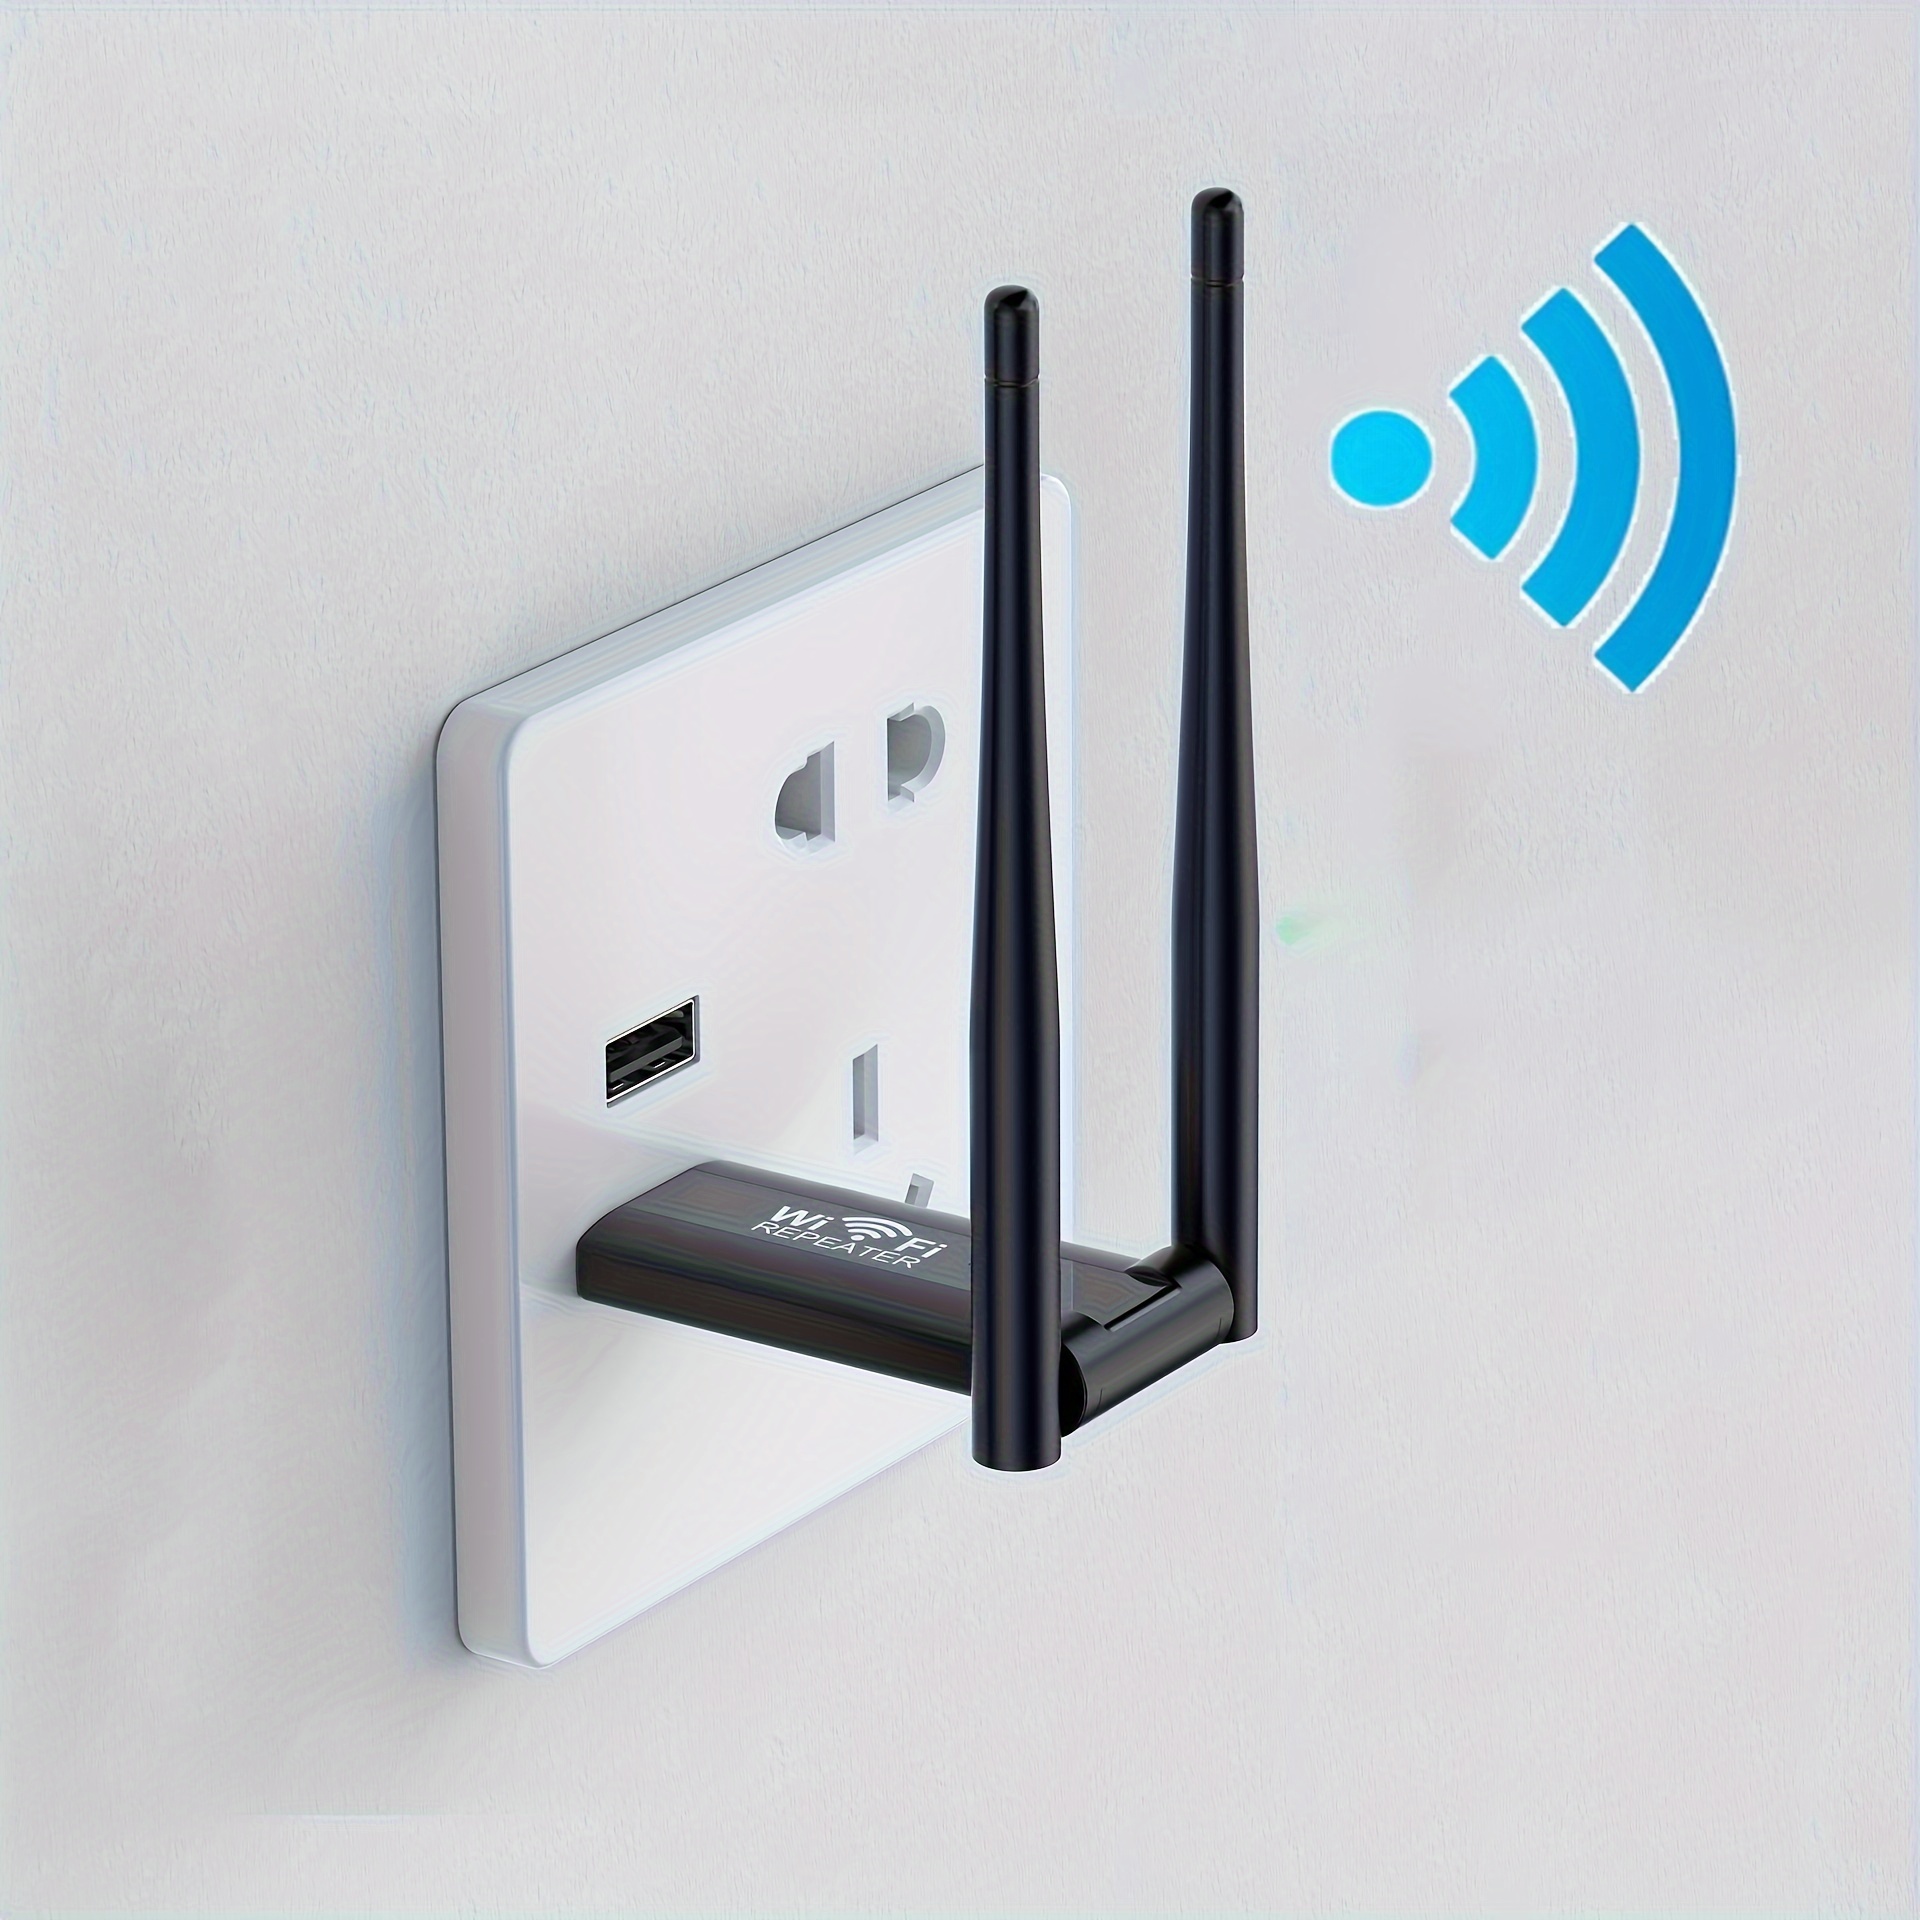 Corotos  Repetidores de señal wifi para uso en tu casa o negocio